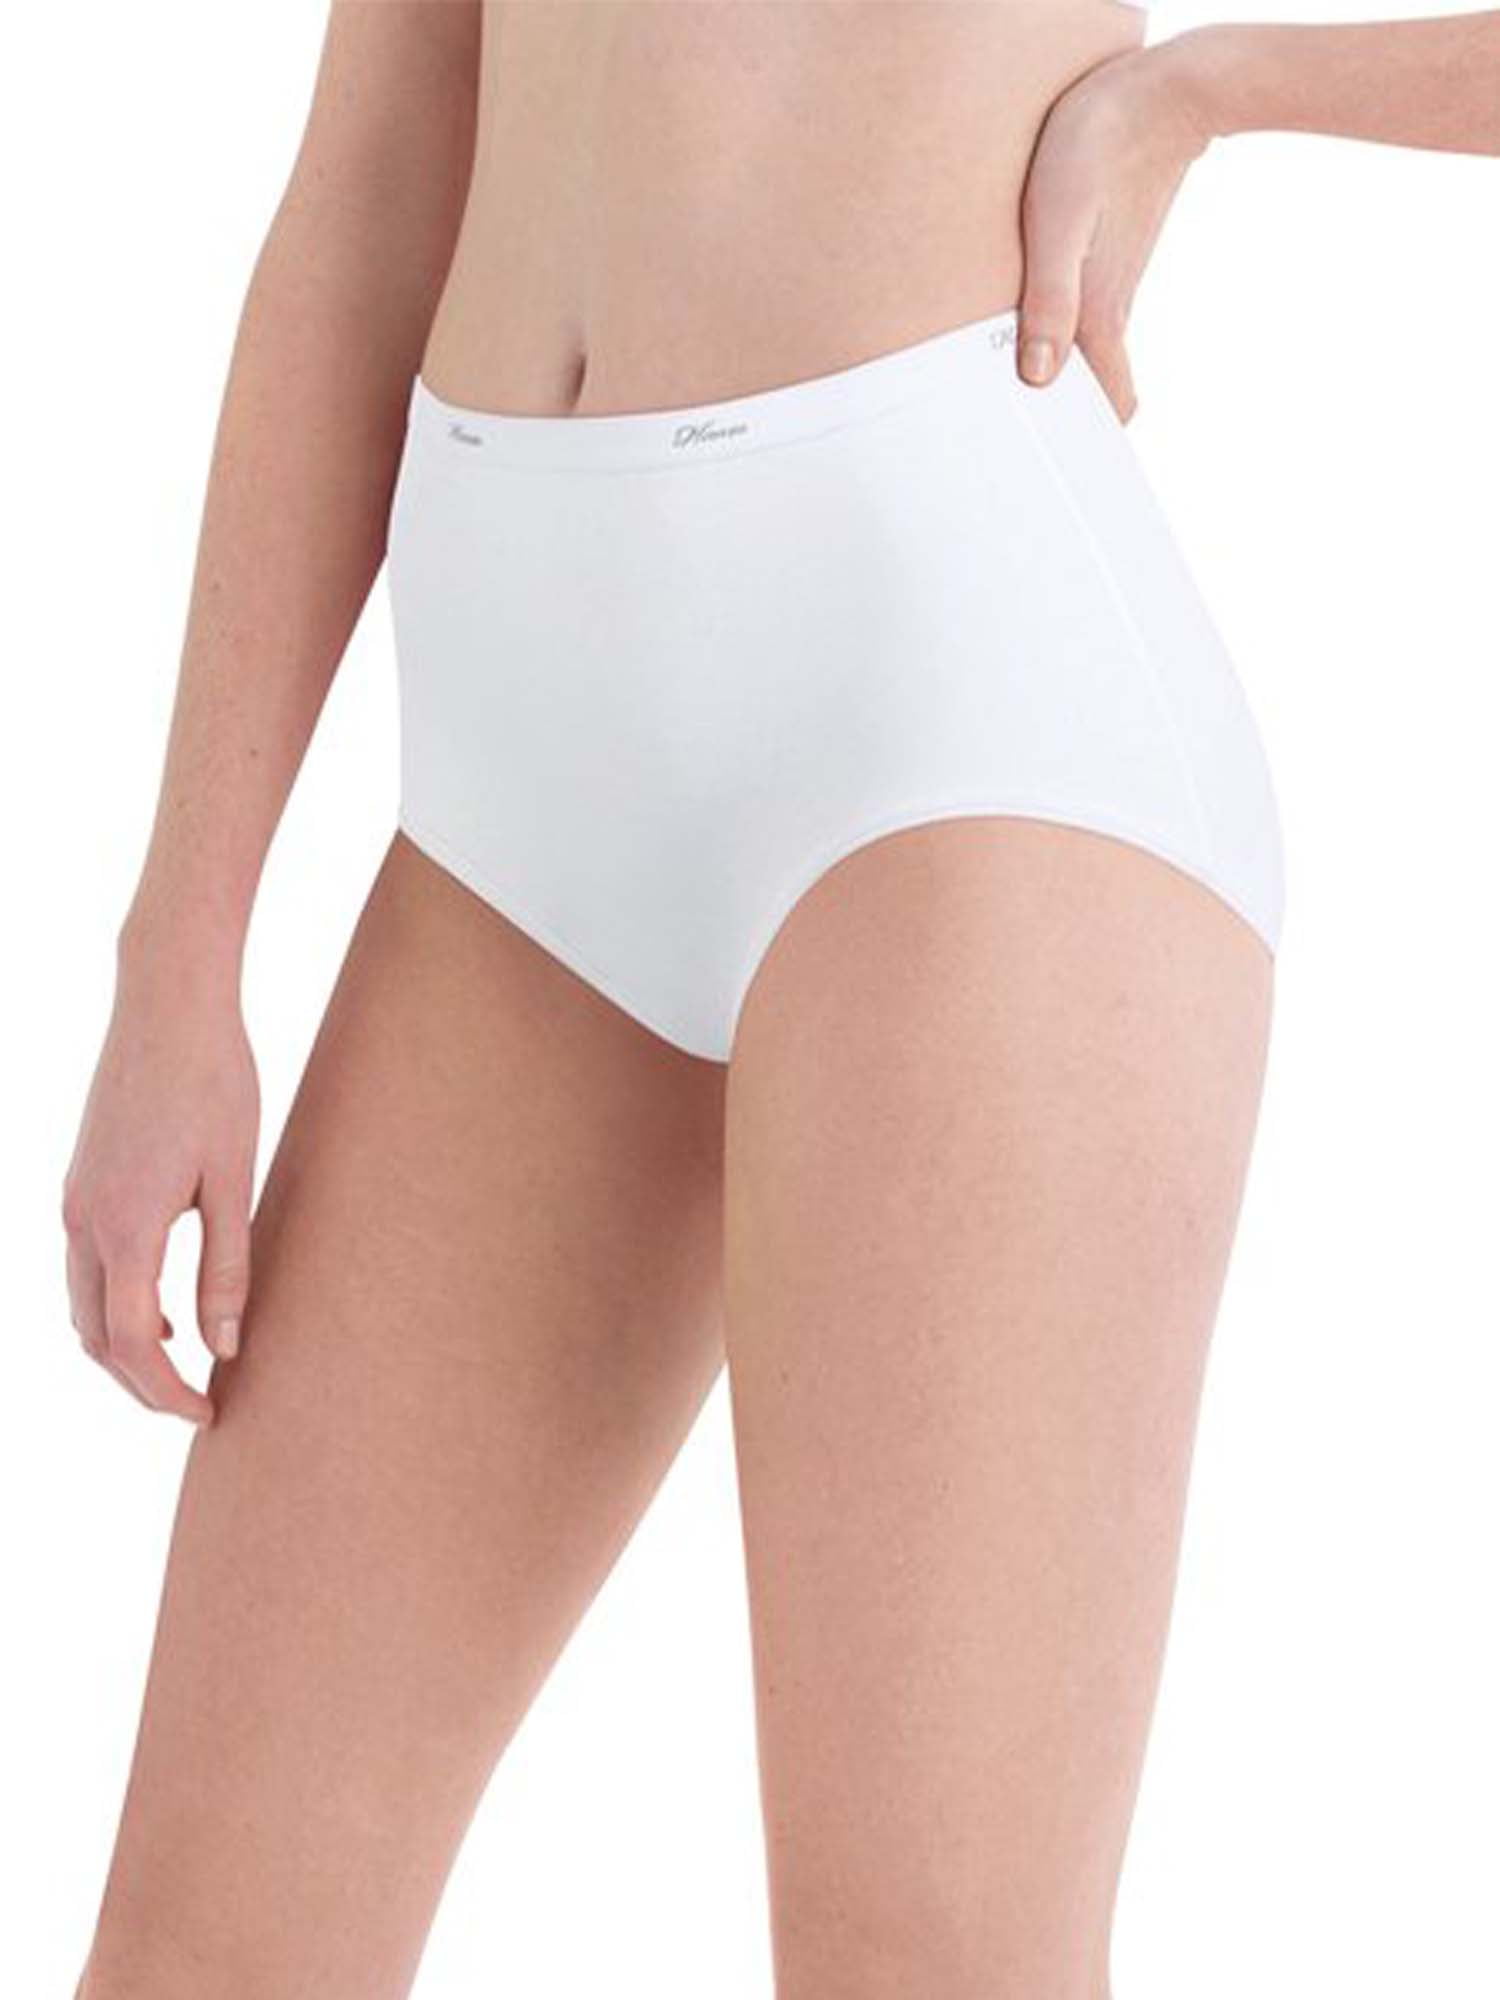 Hanes Women's Cool Comfort Underwear Panties 